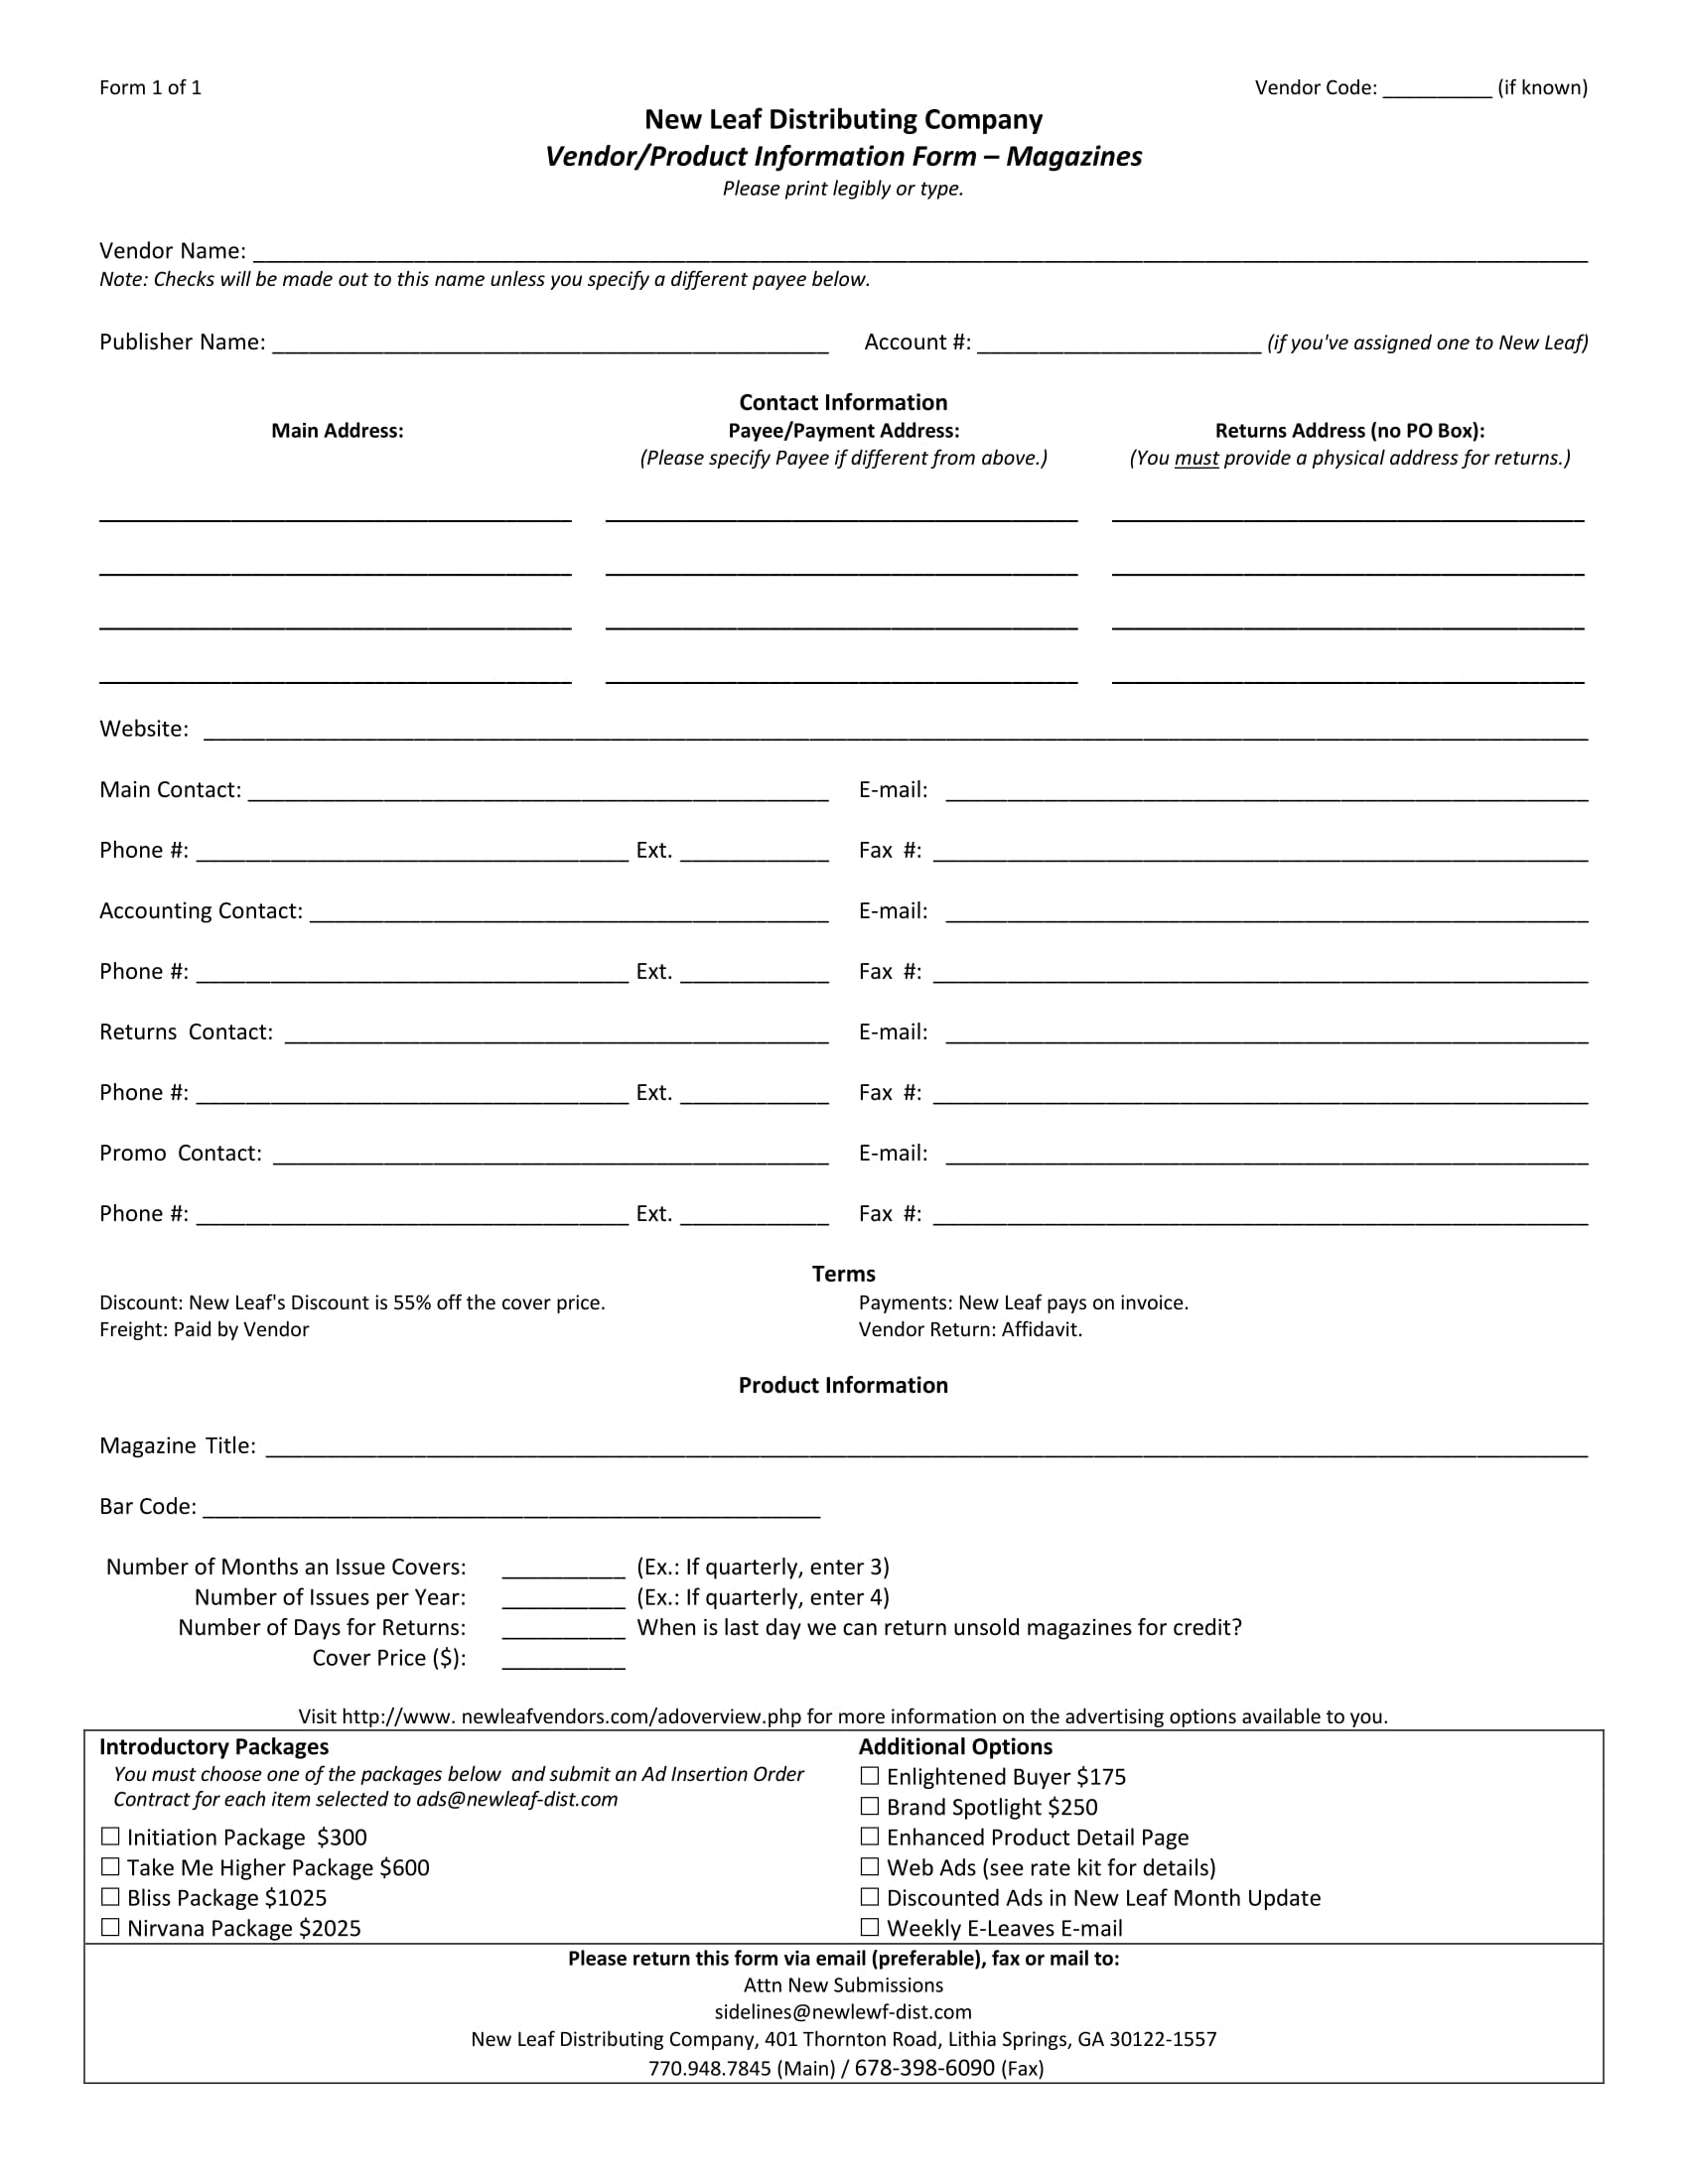 vendor product information form 1